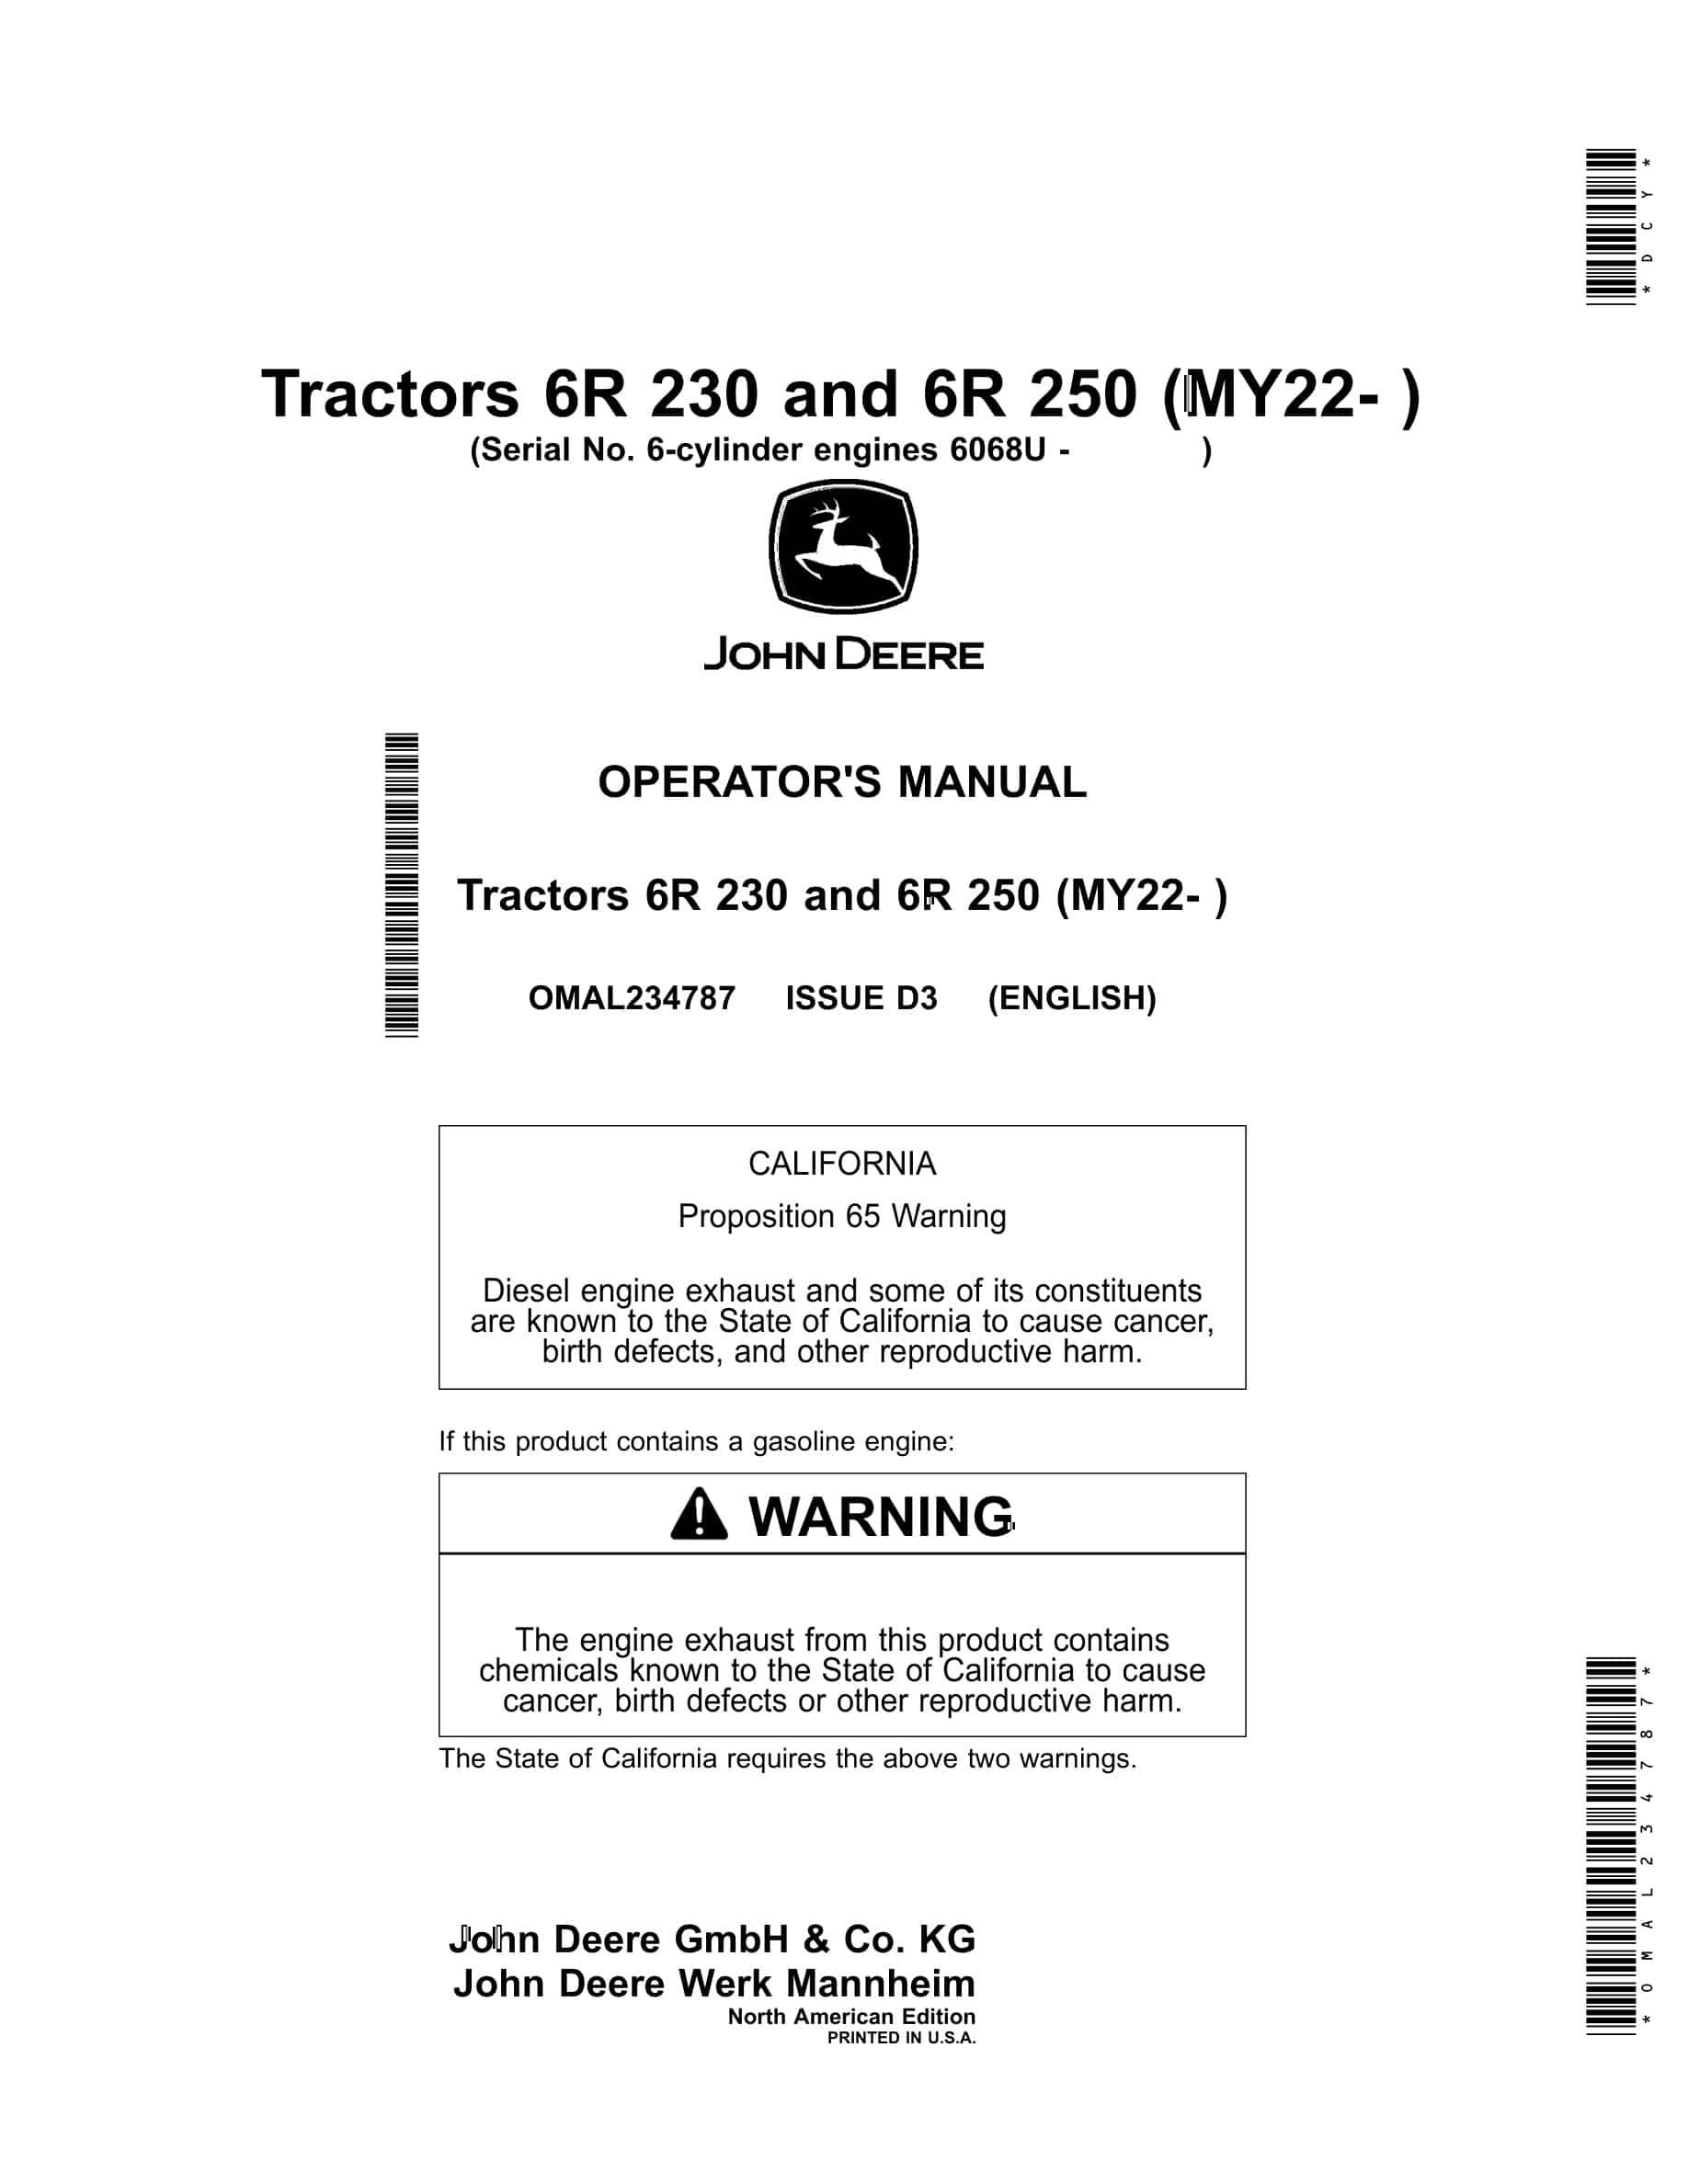 John Deere 6r 230 And 6r 250 (my22- ) Tractors Operator Manuals OMAL234787-1